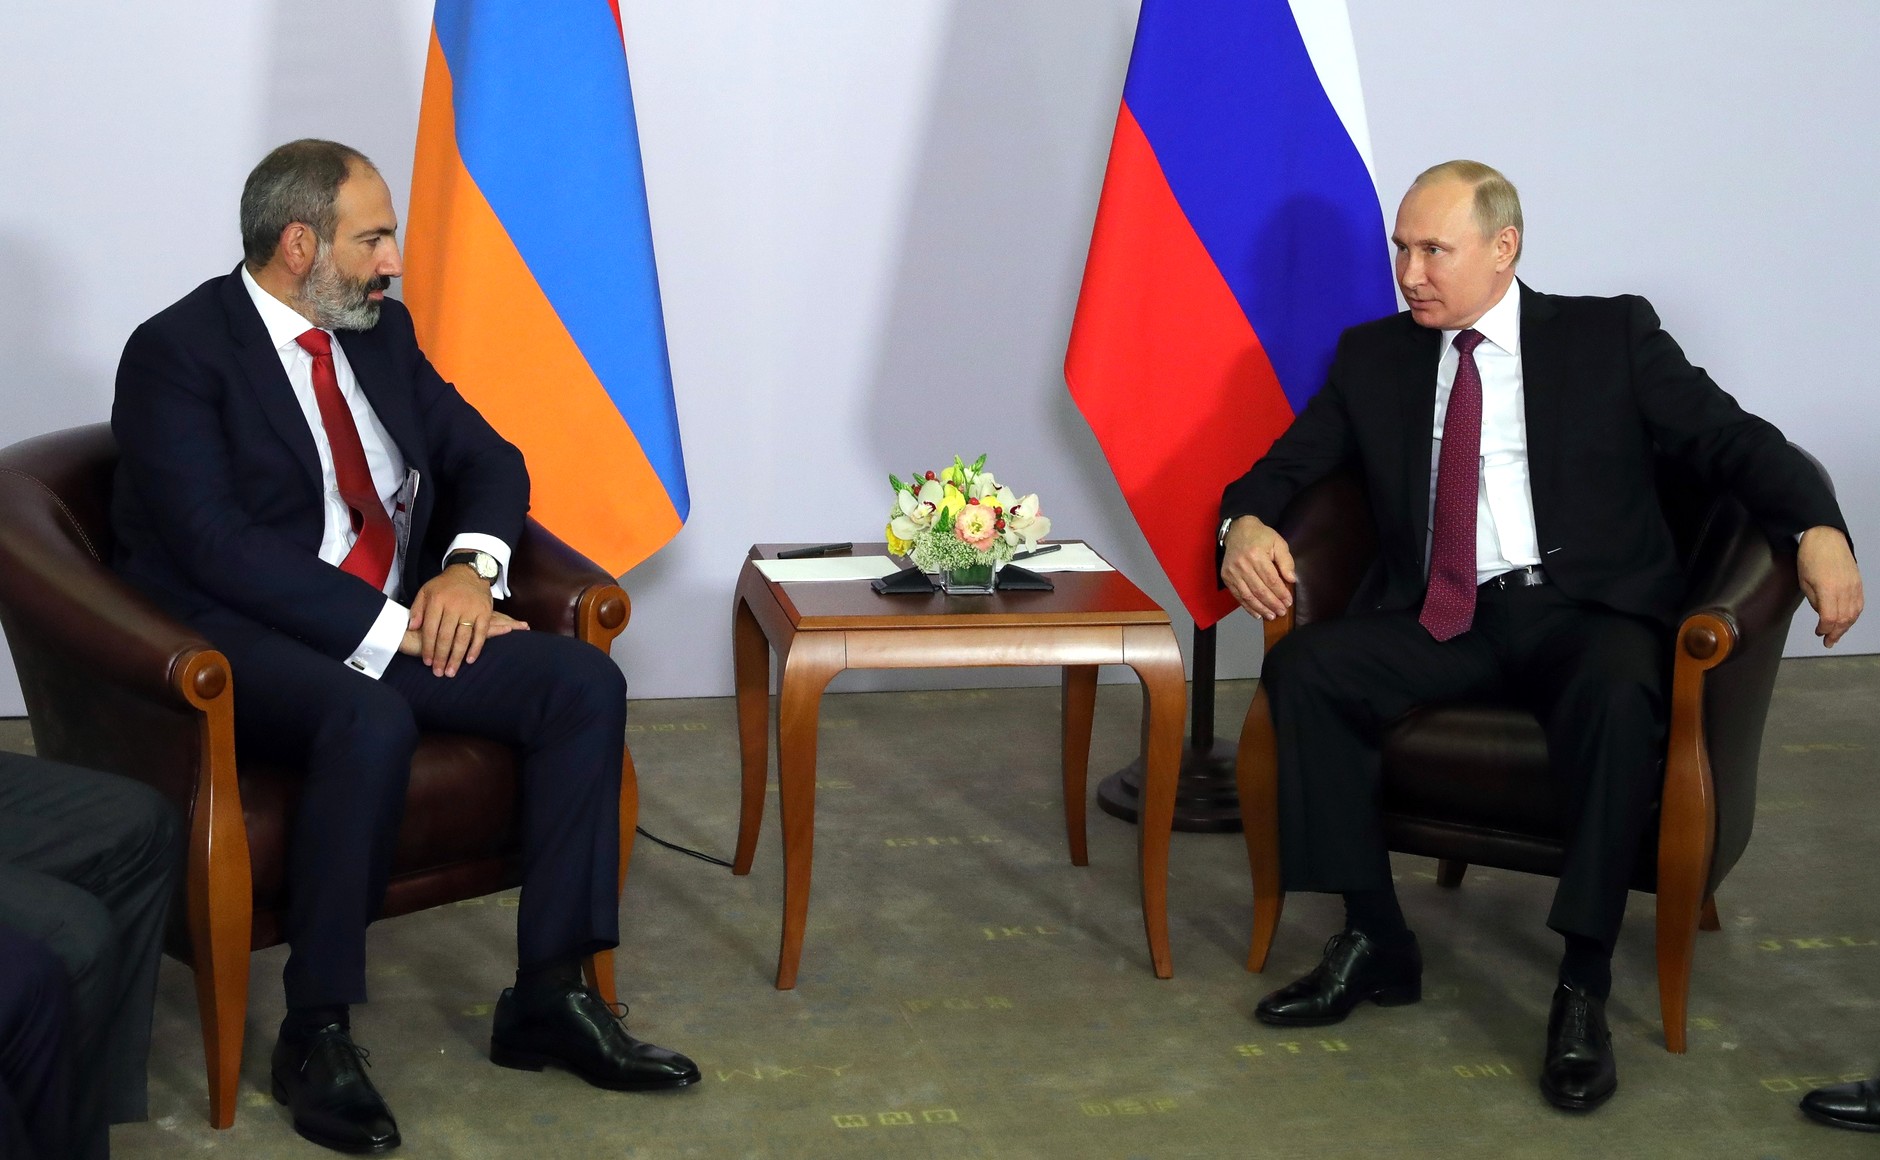 Никол Пашинян и Владимир Путин обсудили цену на газ в Санкт-Петербурге - министр